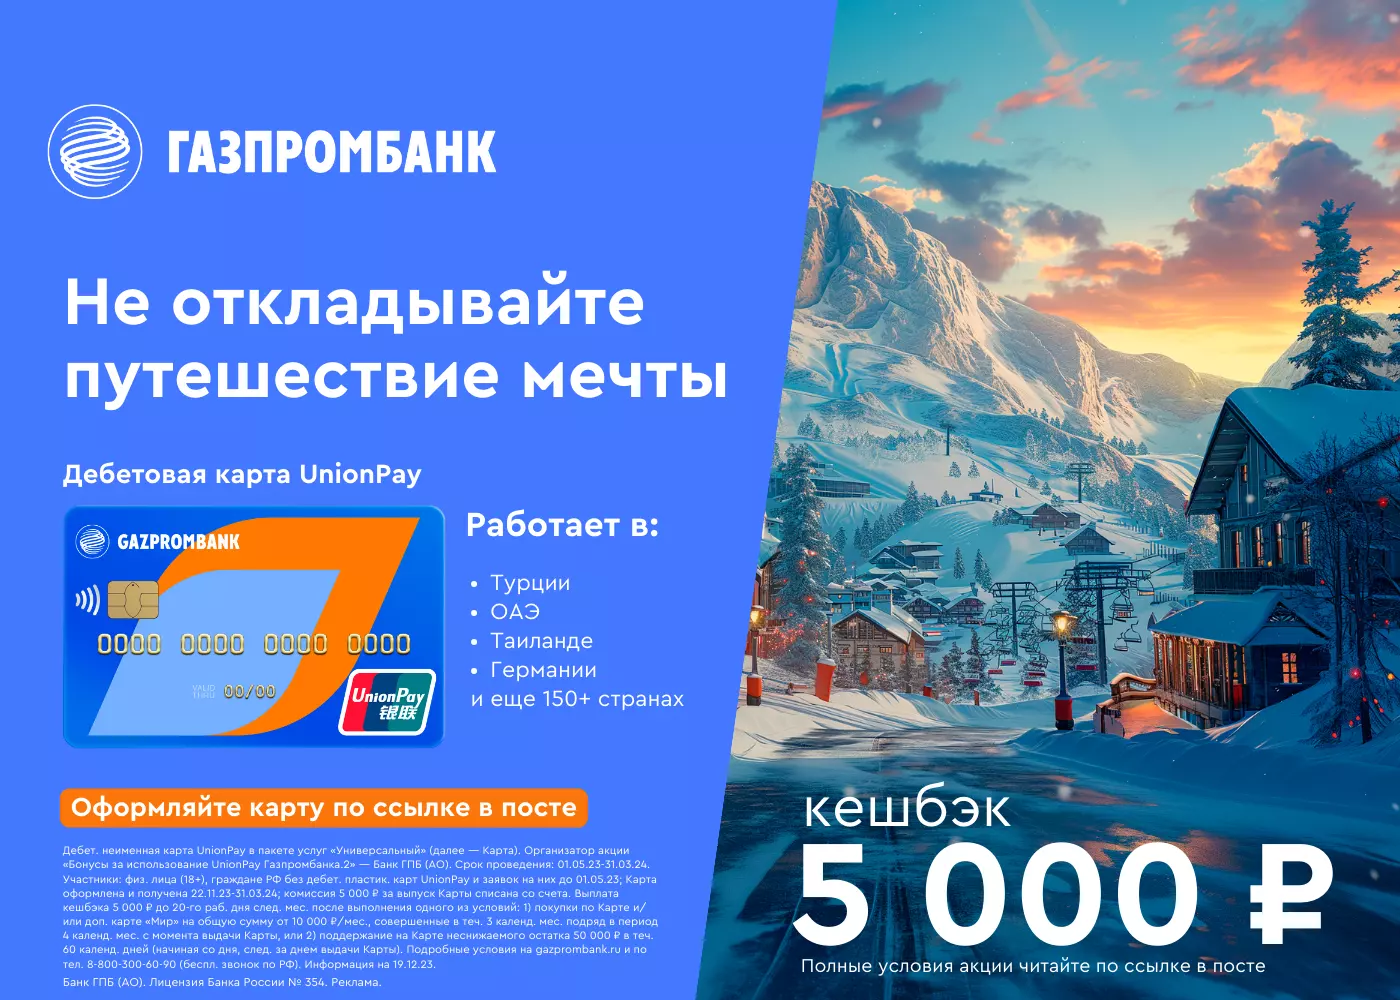 дебетовая карта unionpay газпромбанка в валюте рубли и кэшбэком 5000 по акции